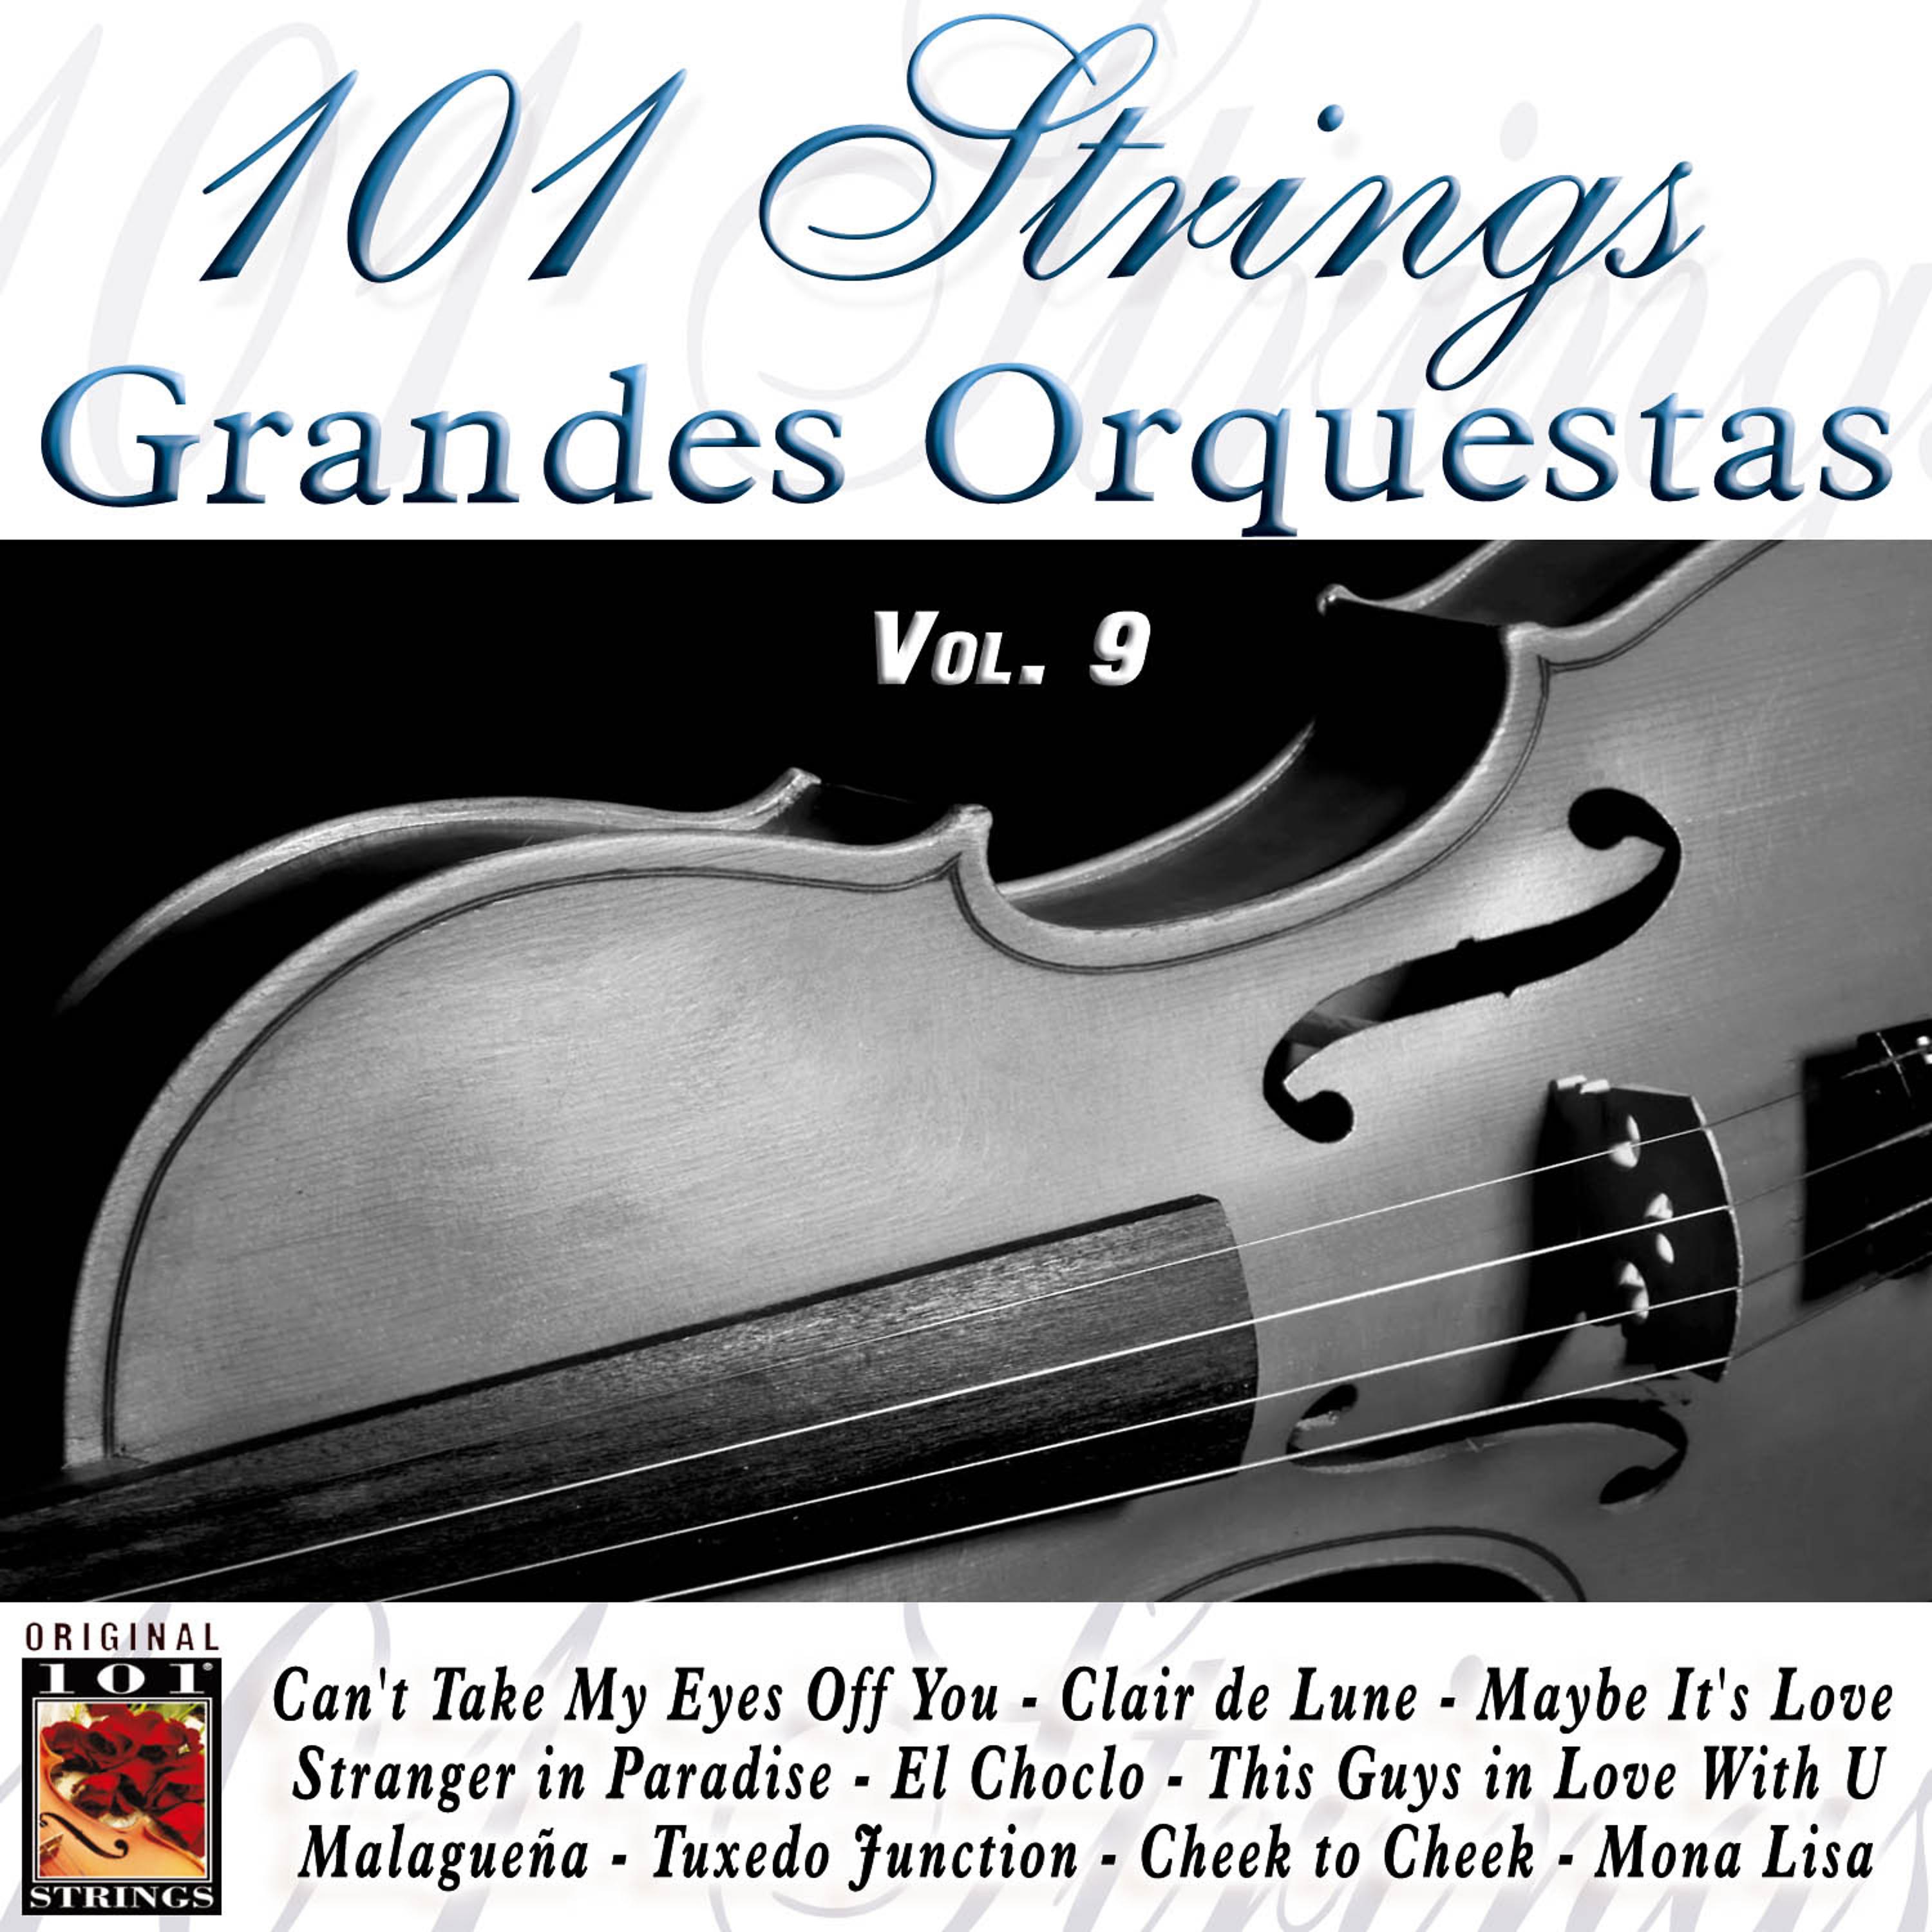 Постер альбома 101 Strings Grandes Orquestas Vol. 9